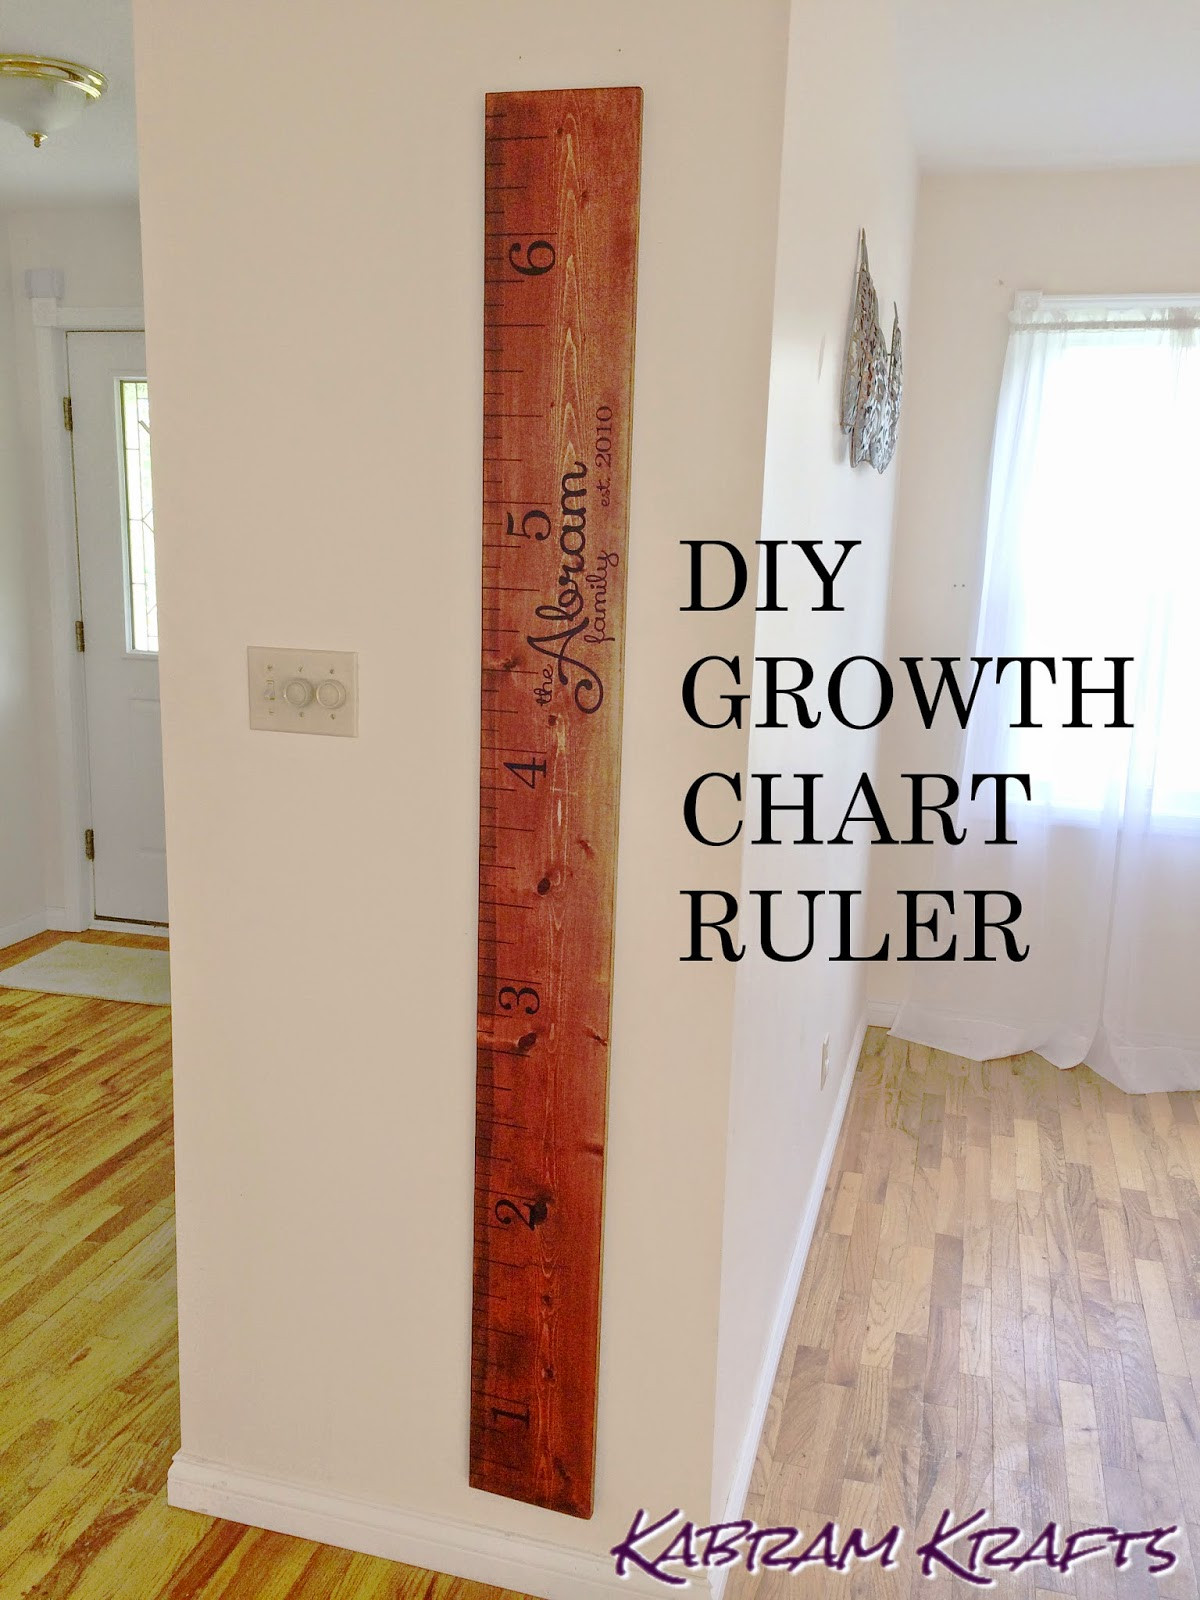 DIY Wooden Growth Chart
 DIY Wooden Growth Ruler Chart Kabram Krafts